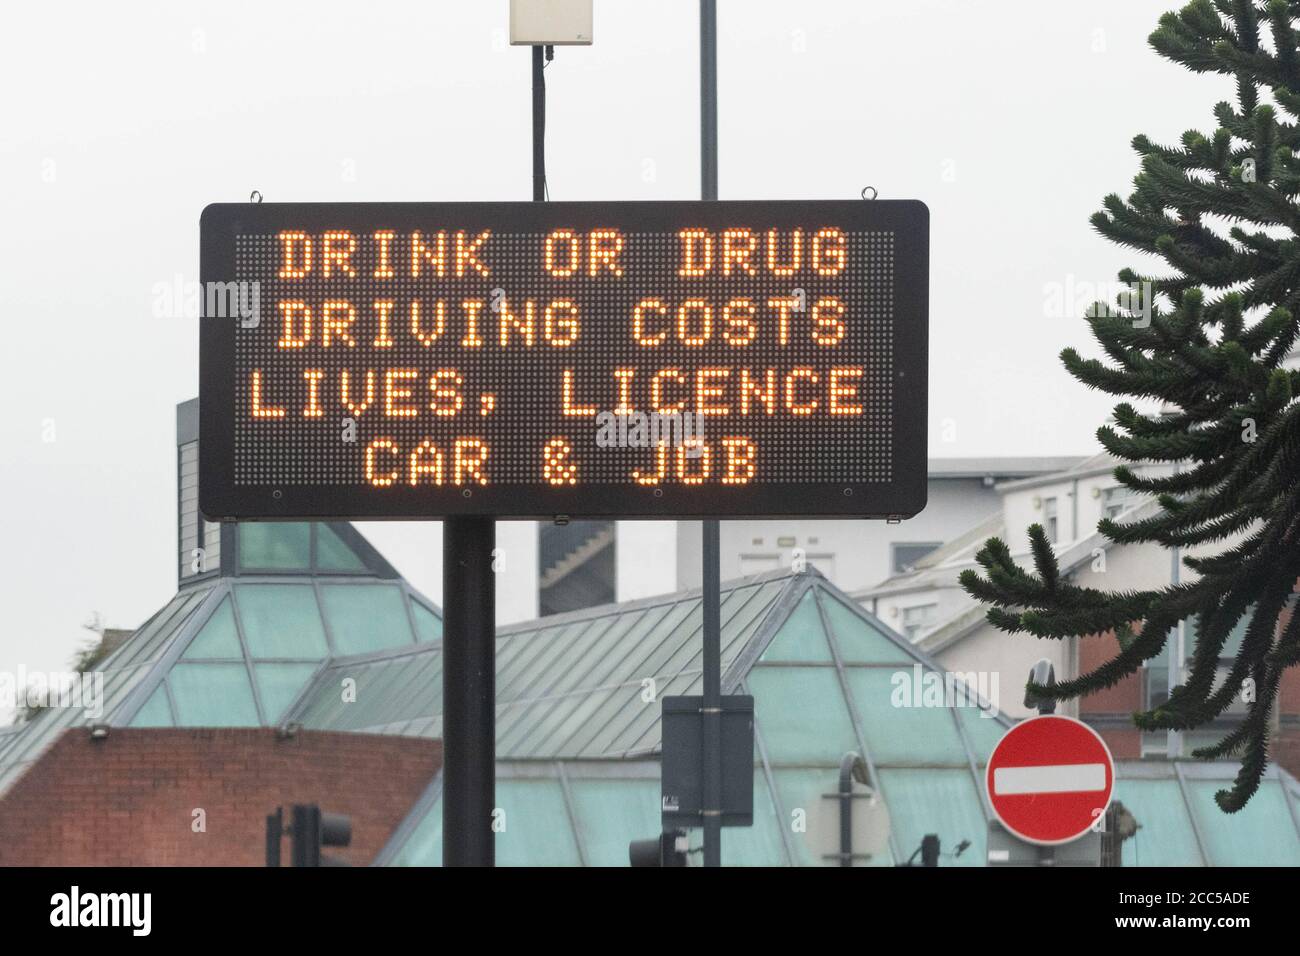 Trinken oder Drogen Fahrkosten Leben, Kfz-Führerschein und Job-Schilder in Leeds, West Yorkshire, England, Großbritannien Stockfoto